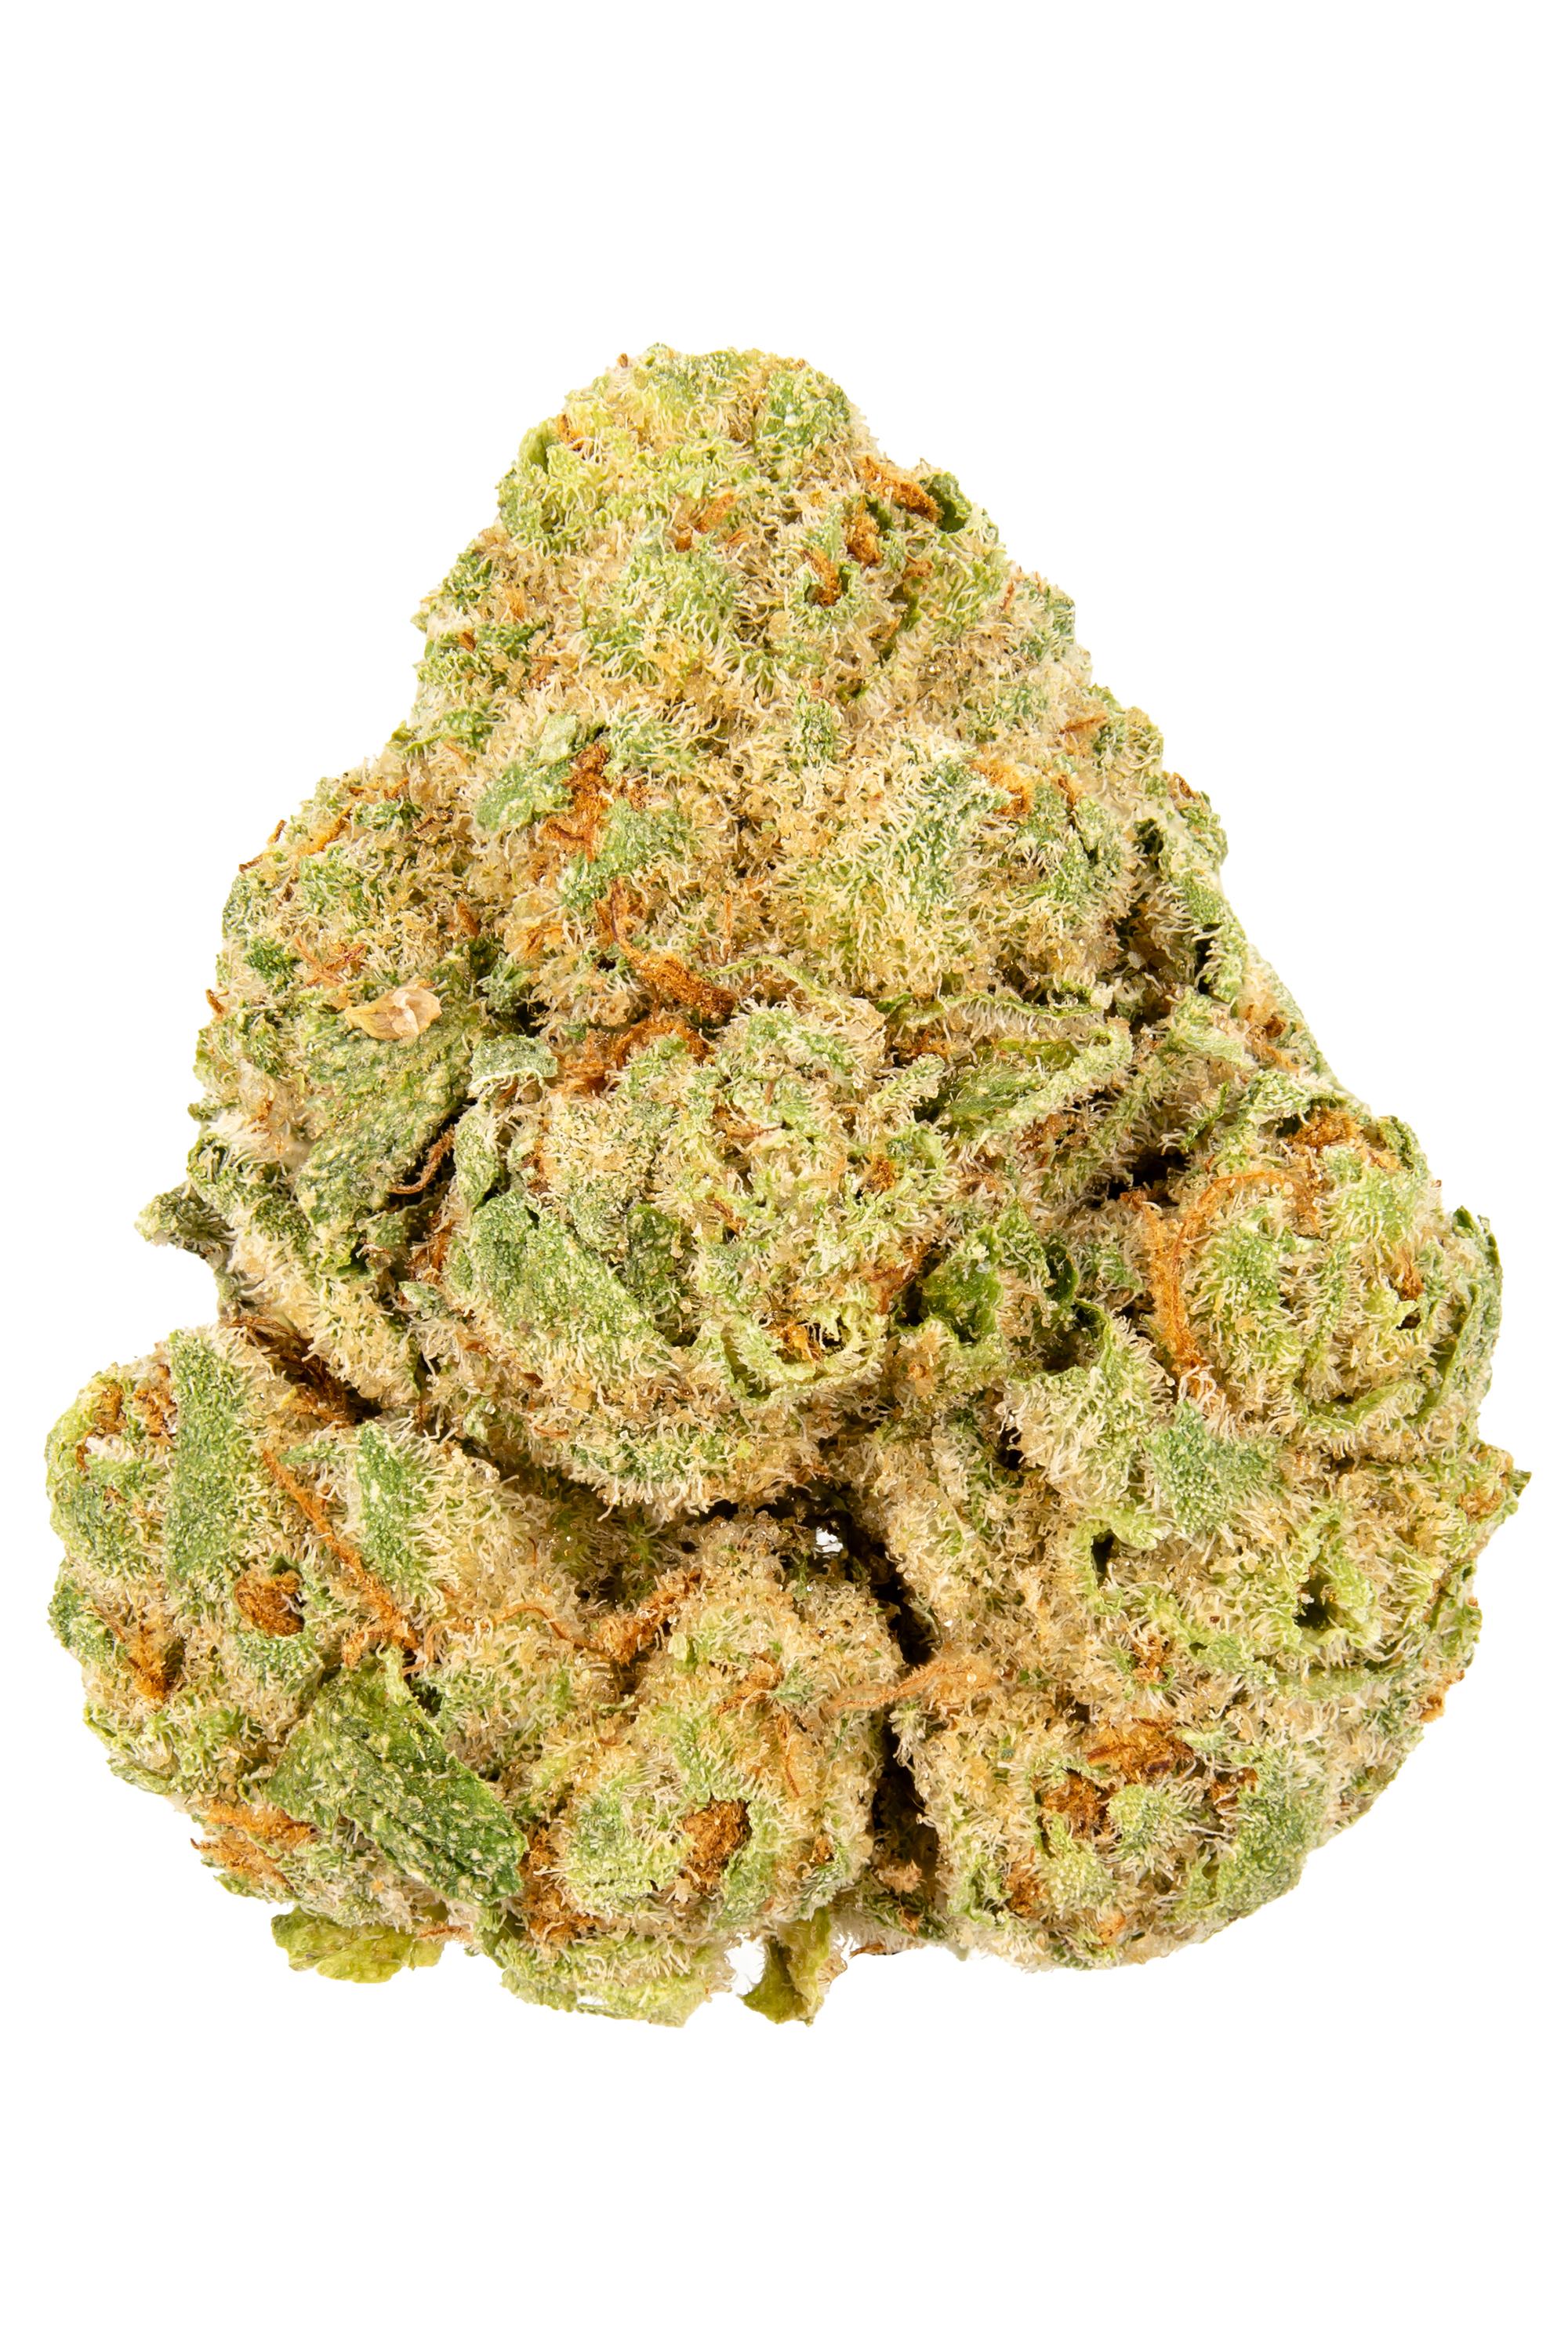 T-M.A.C Hybrid Cannabis Strain Thumbnail